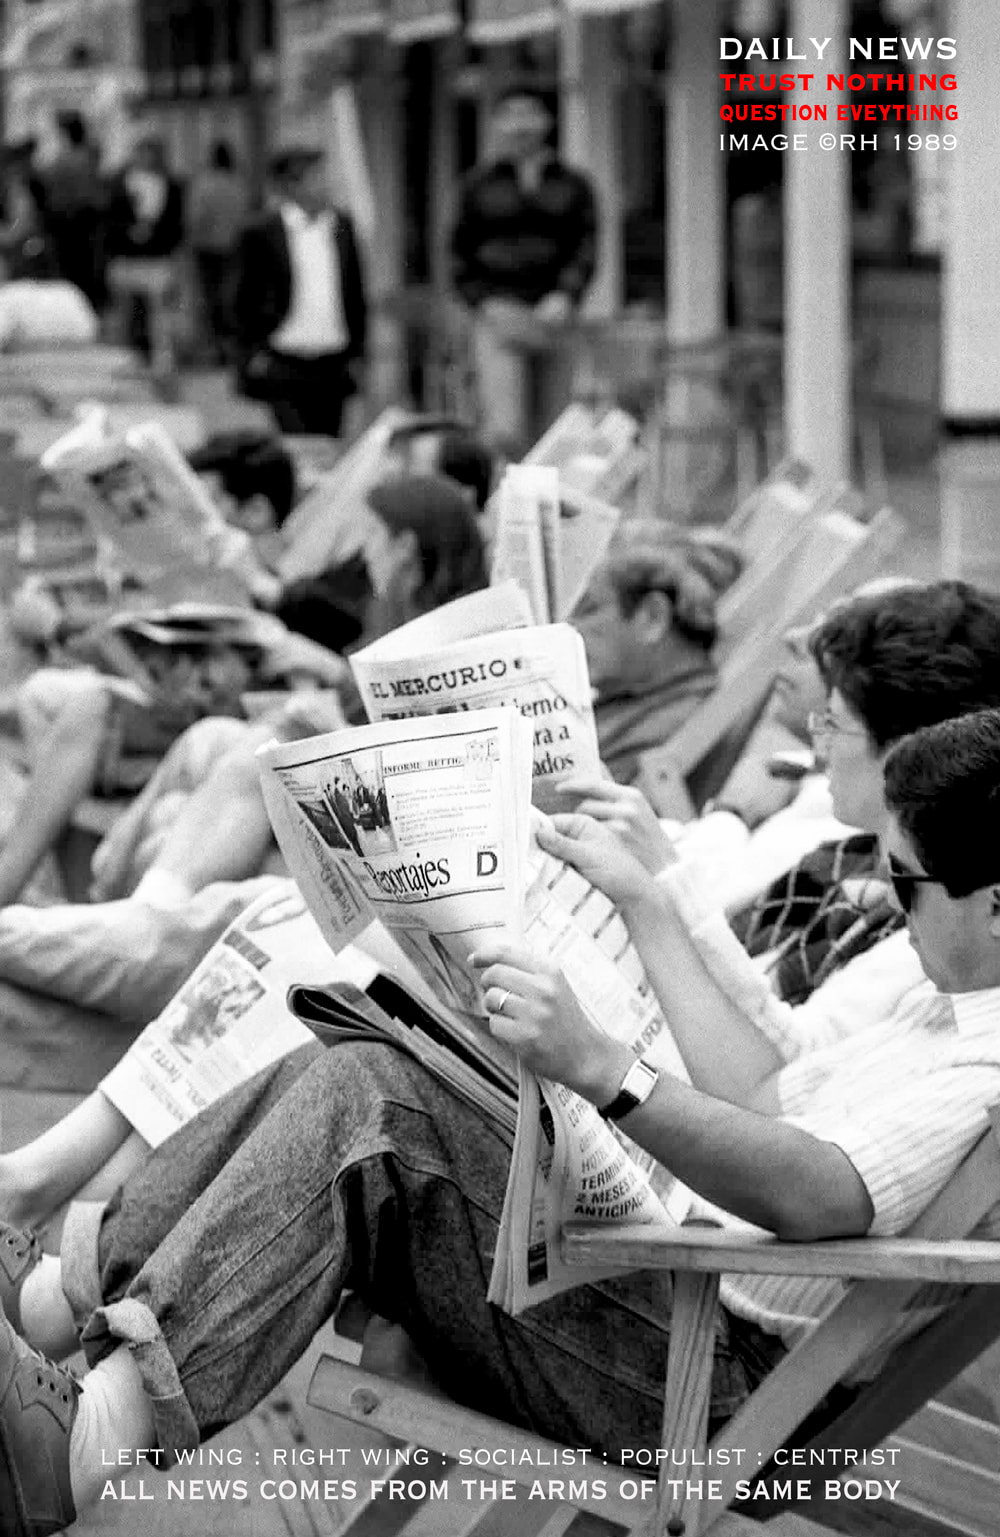 daily news intake, original 1988 image by Rick Hemi